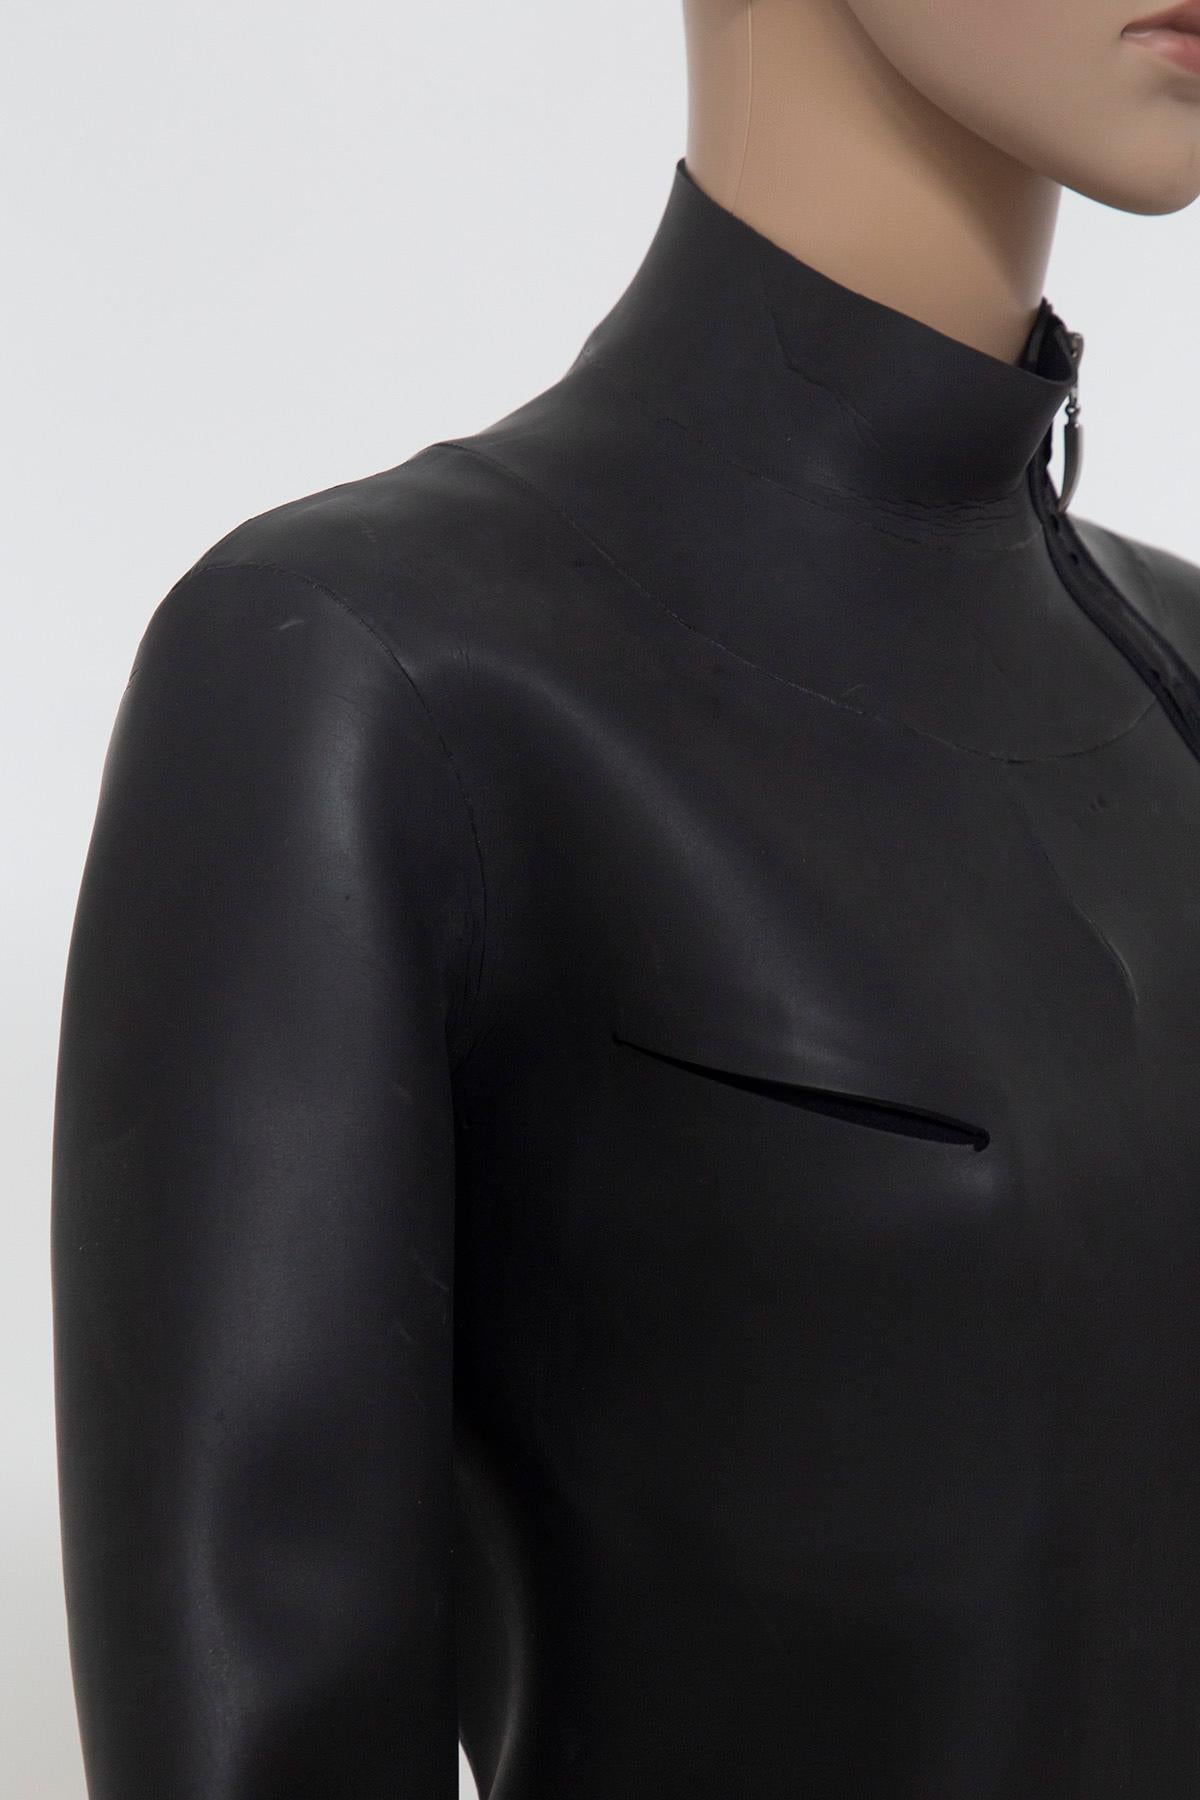 Jean Paul Gaultier modern suba/rubberized jacket For Sale 3